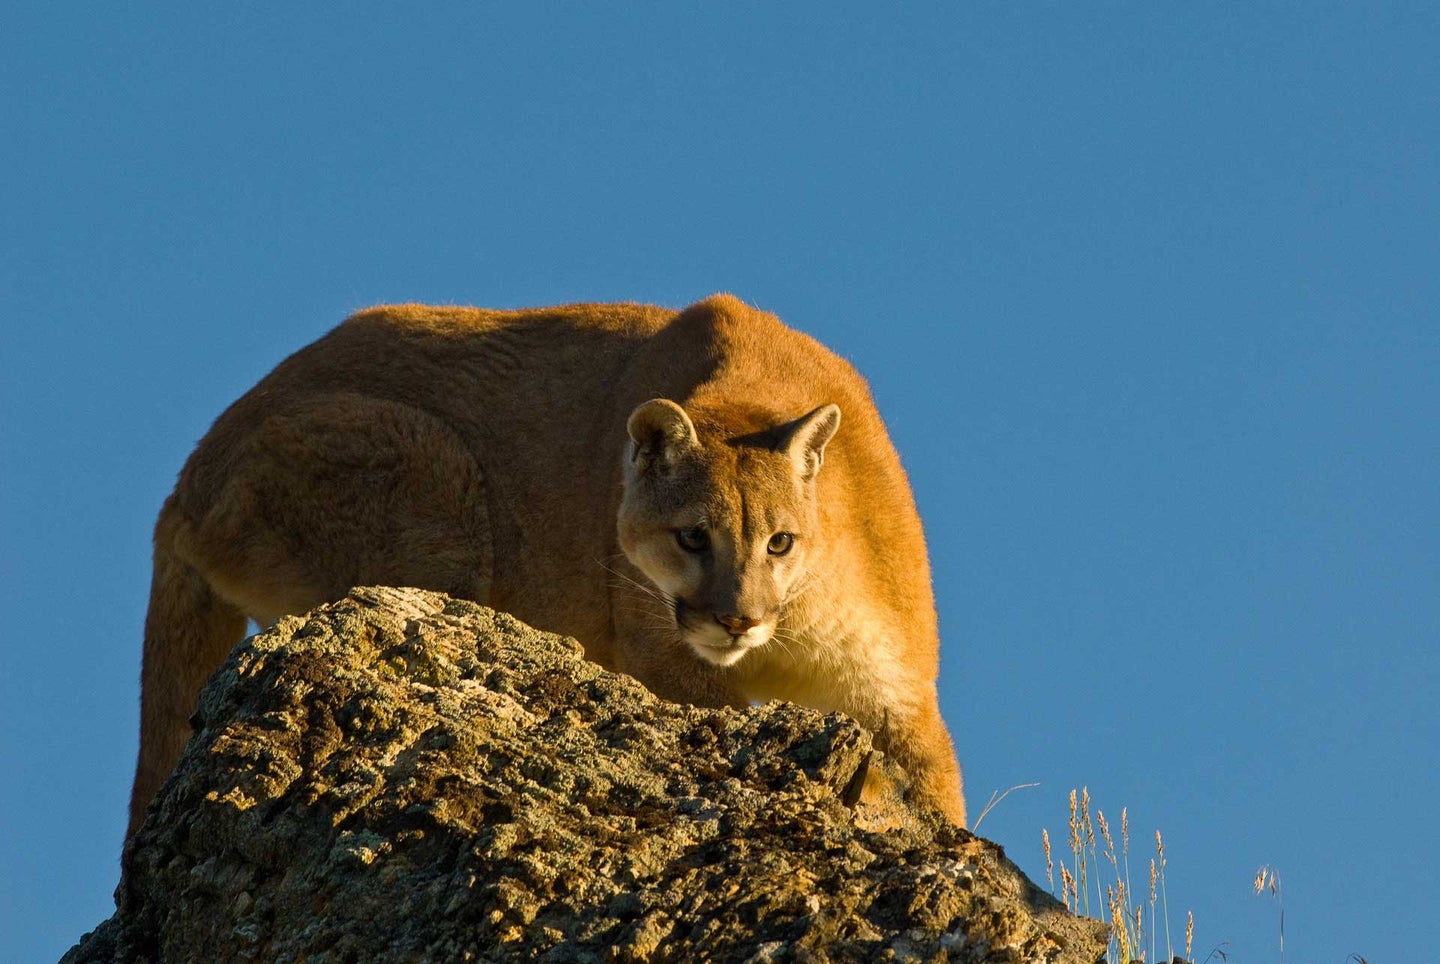 Mountain lion